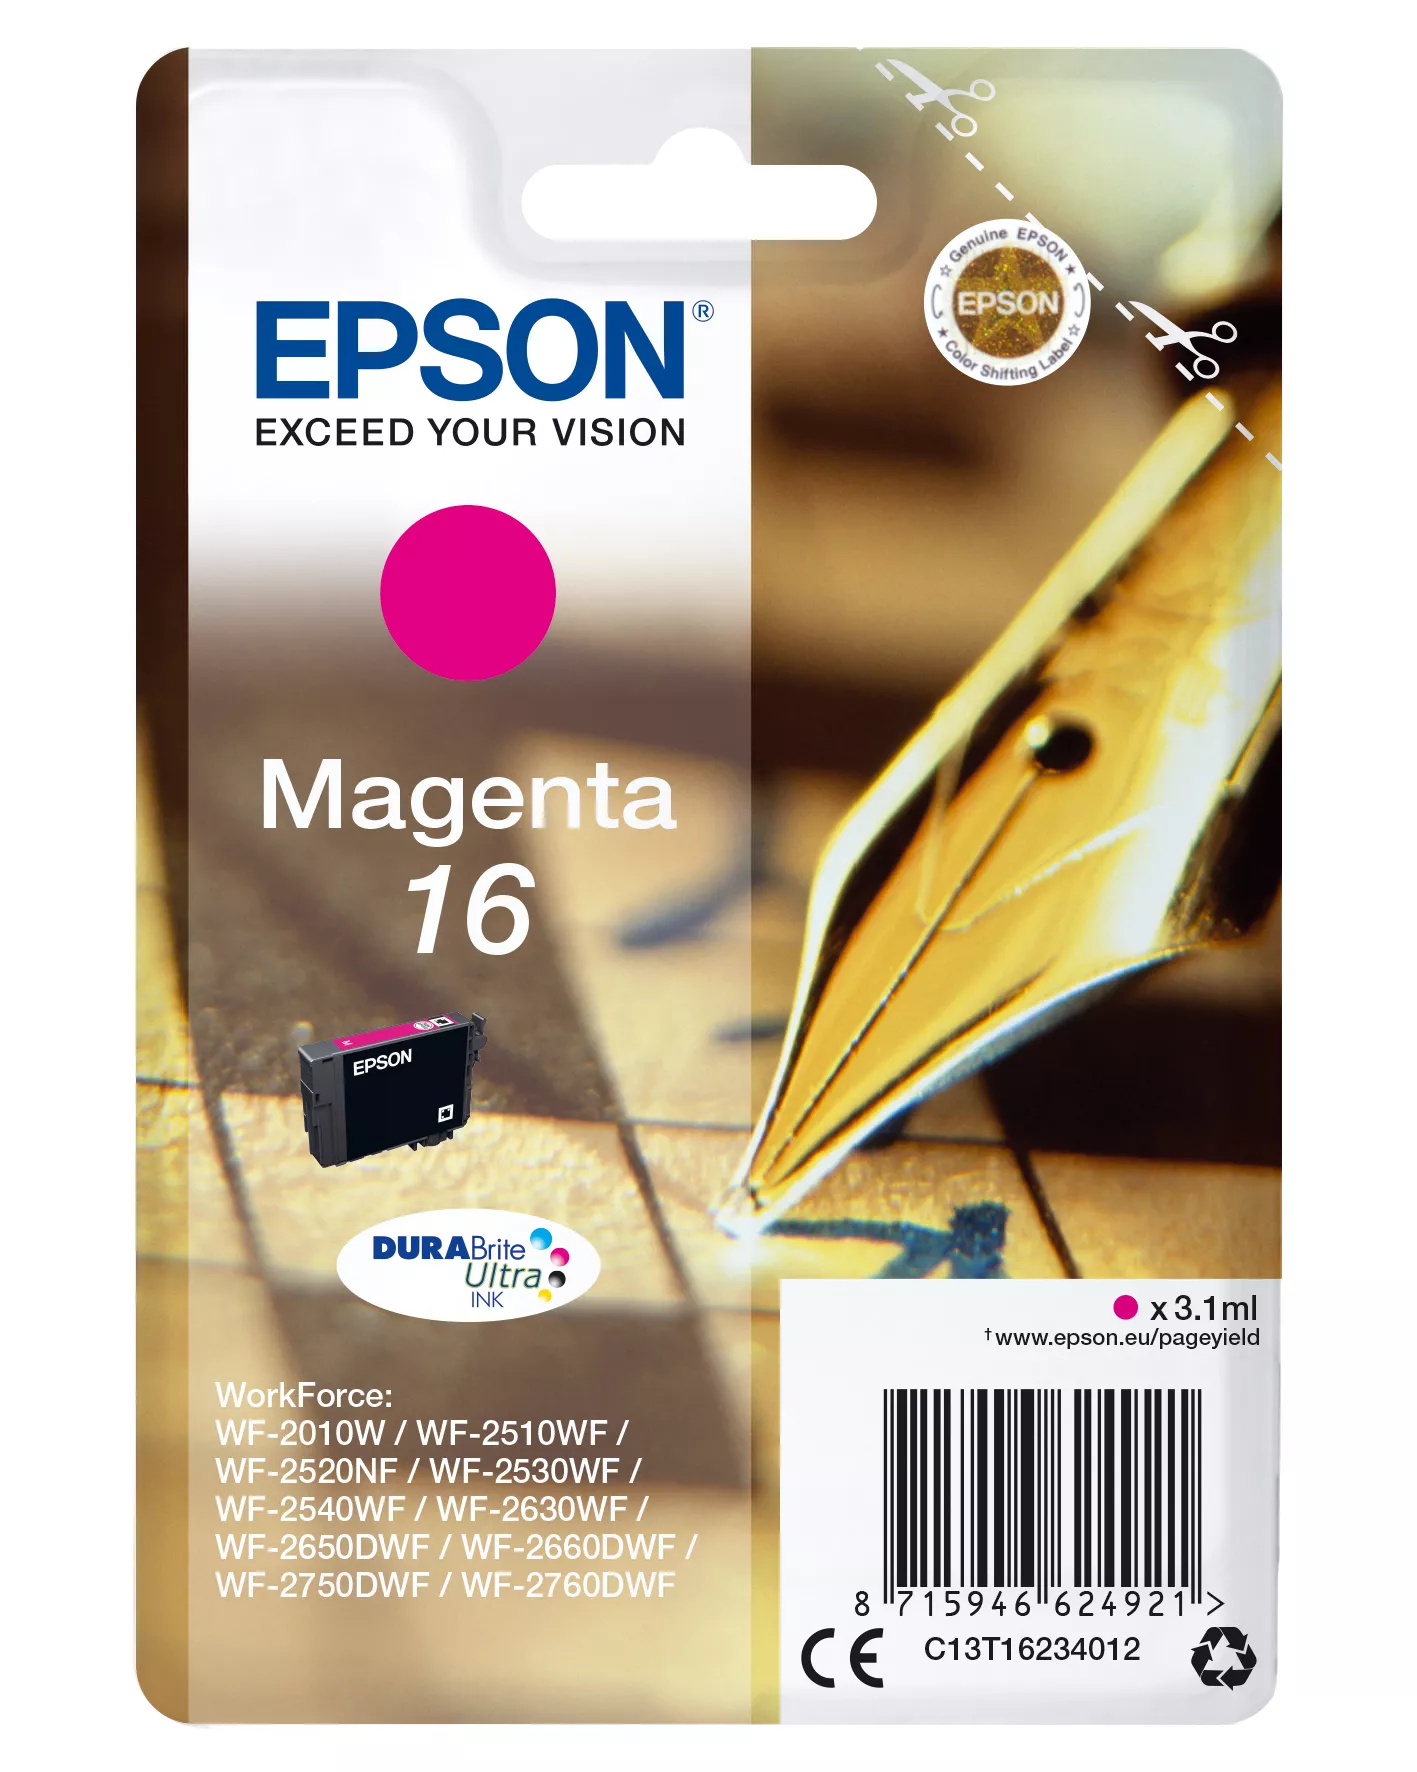 Vente EPSON 16 cartouche dencre magenta capacité standard 3.1ml au meilleur prix